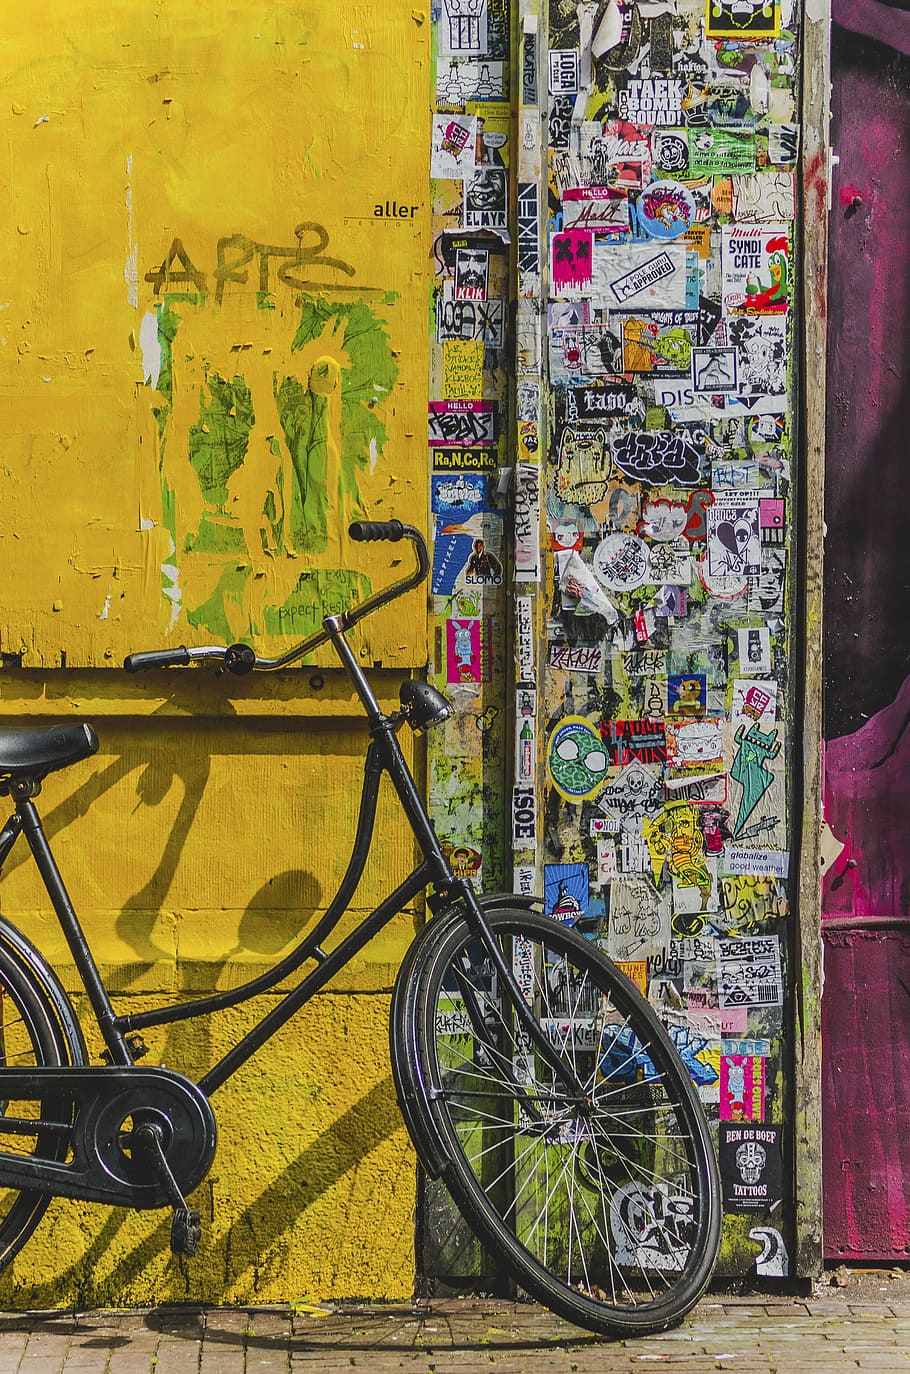 negro, bicicleta cruiser, estacionado, puerta, bicicleta, estética, calcomanías, vandalismo, papel, letrero